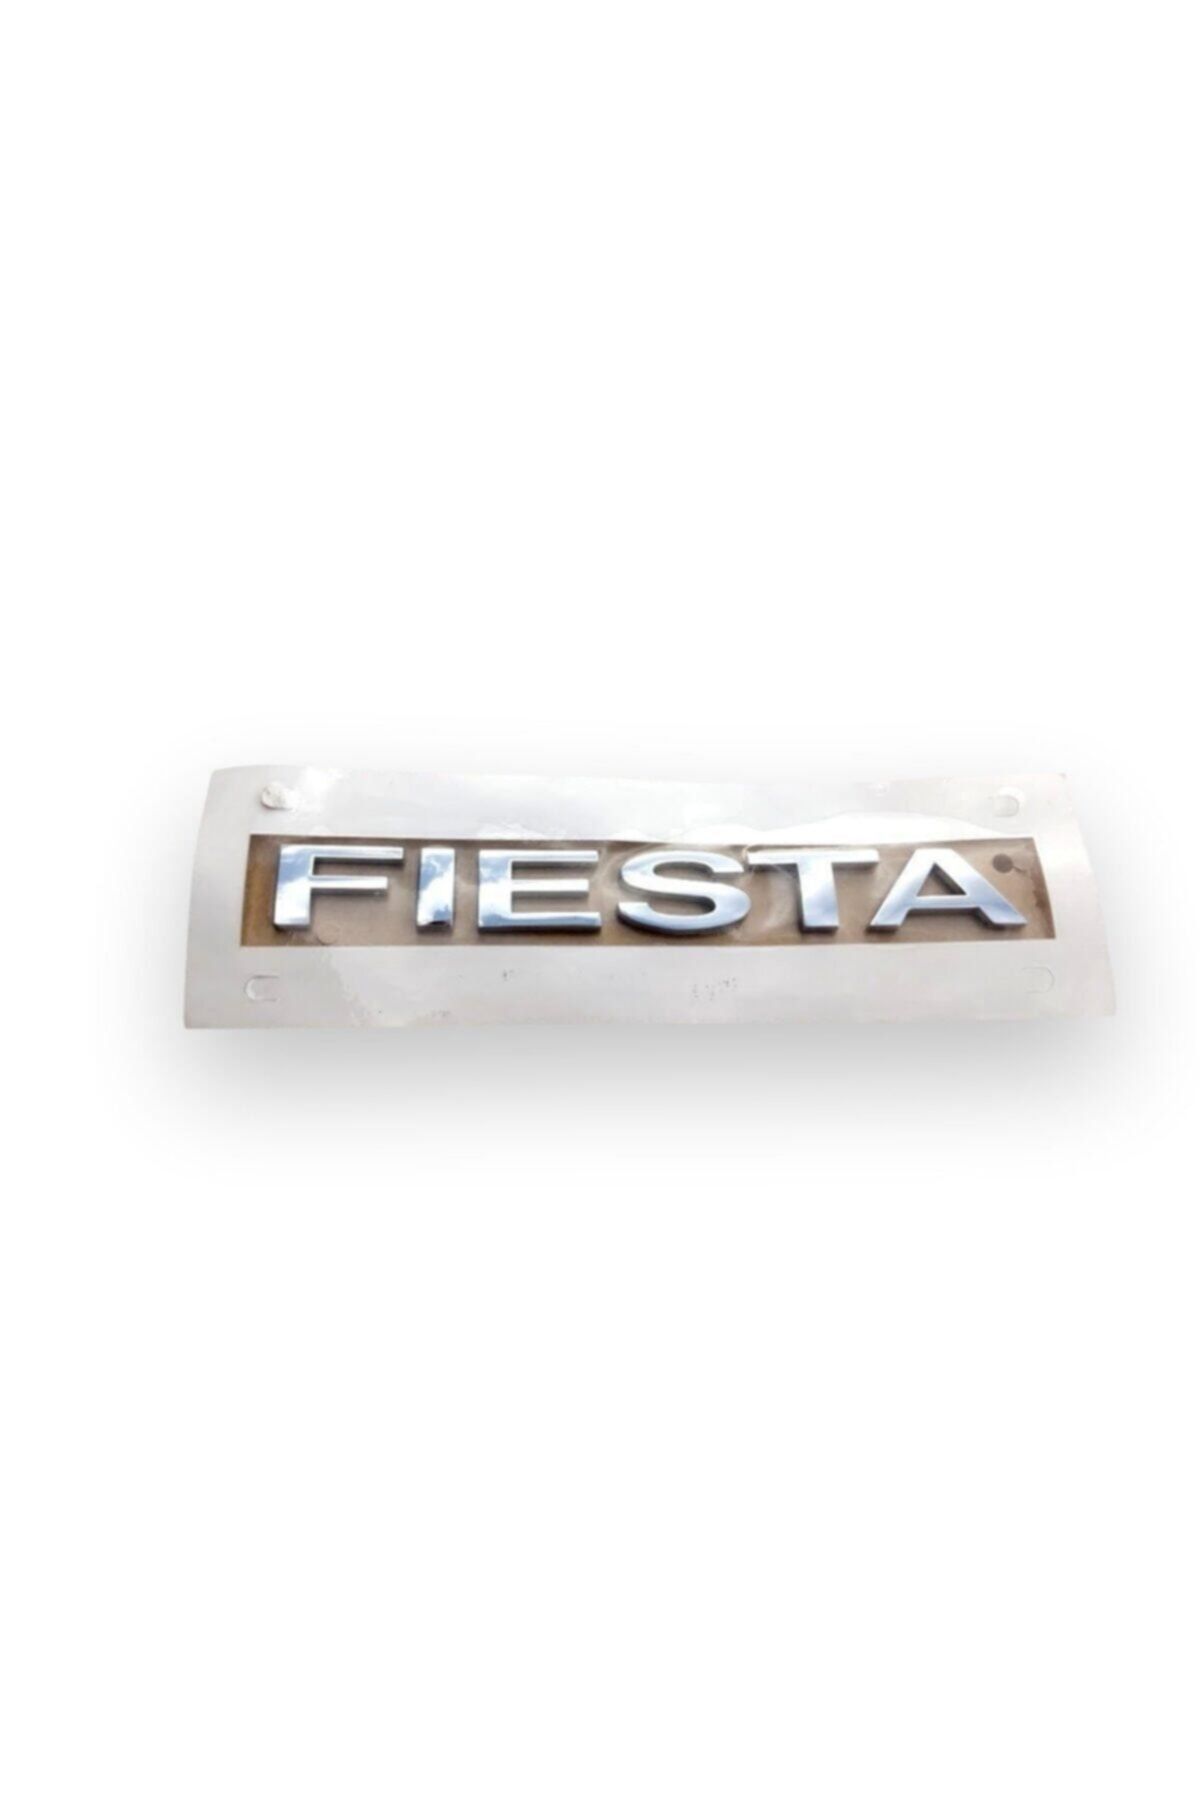 Fiesta Fıesta Bagaj Yazısı--2002-2008 Modele Kadar Uyumlu